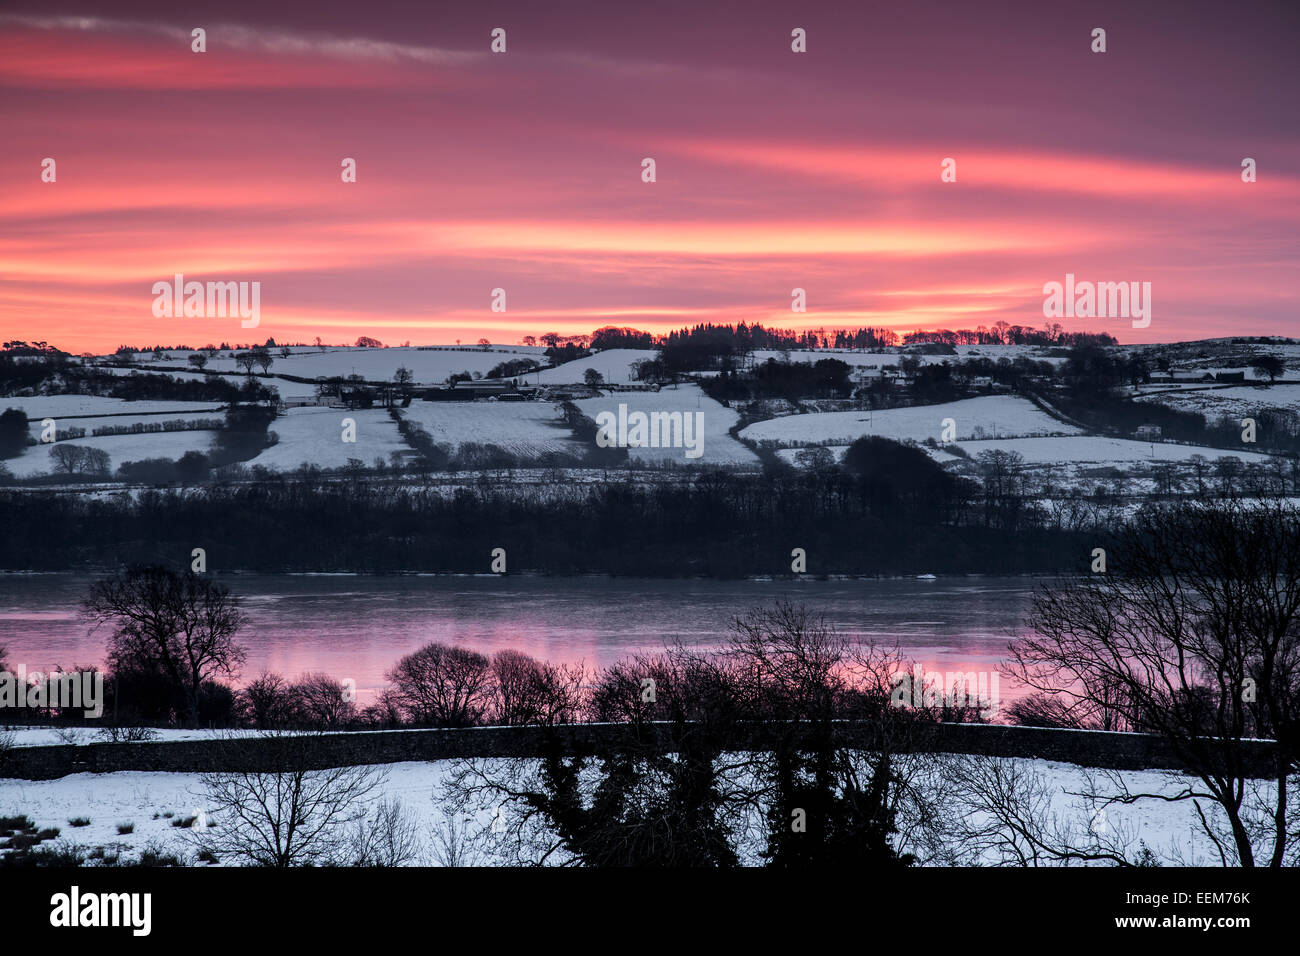 Lochwinnoch, Renfrewshire, Écosse, Royaume-Uni, mardi 20 janvier 2015. Le soleil se lève sur le Loch du château de Semple et la campagne environnante après des températures glaciales de nuit Banque D'Images